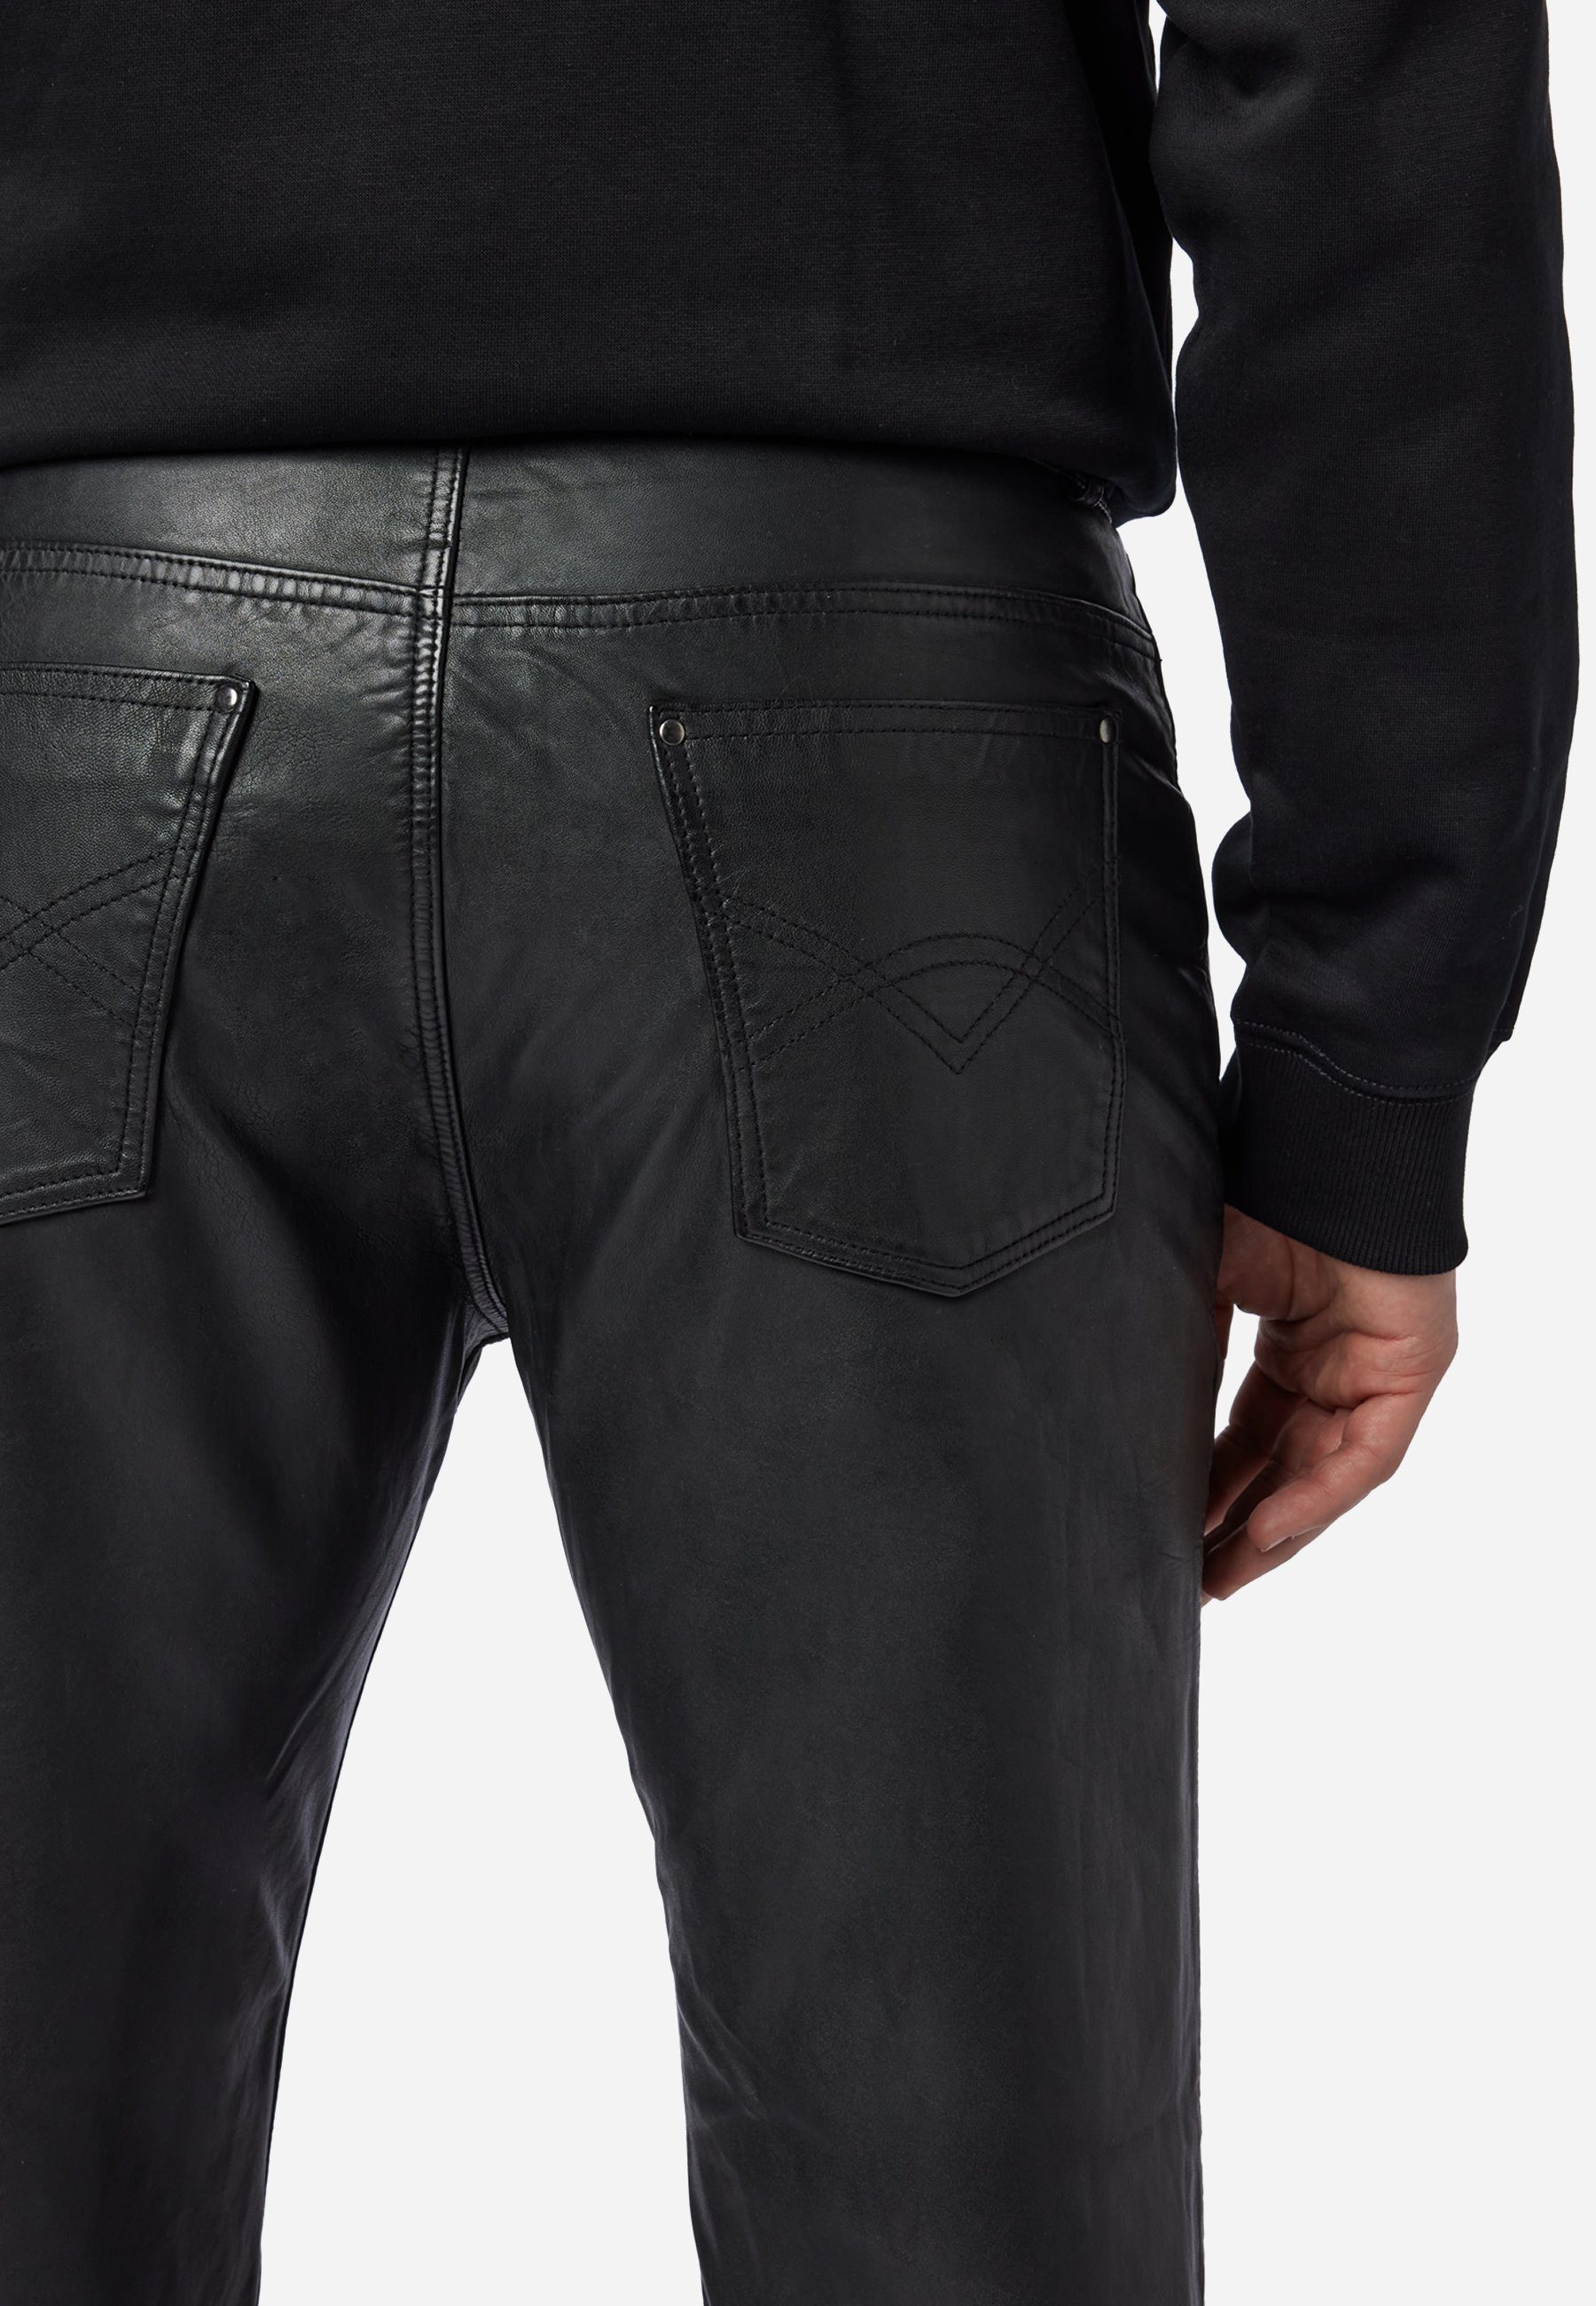 Schwarz 5-Pocket Pant Leder; RICANO Lederhose Hochwertiges Trant Jeans-Optik Lamm-Nappa